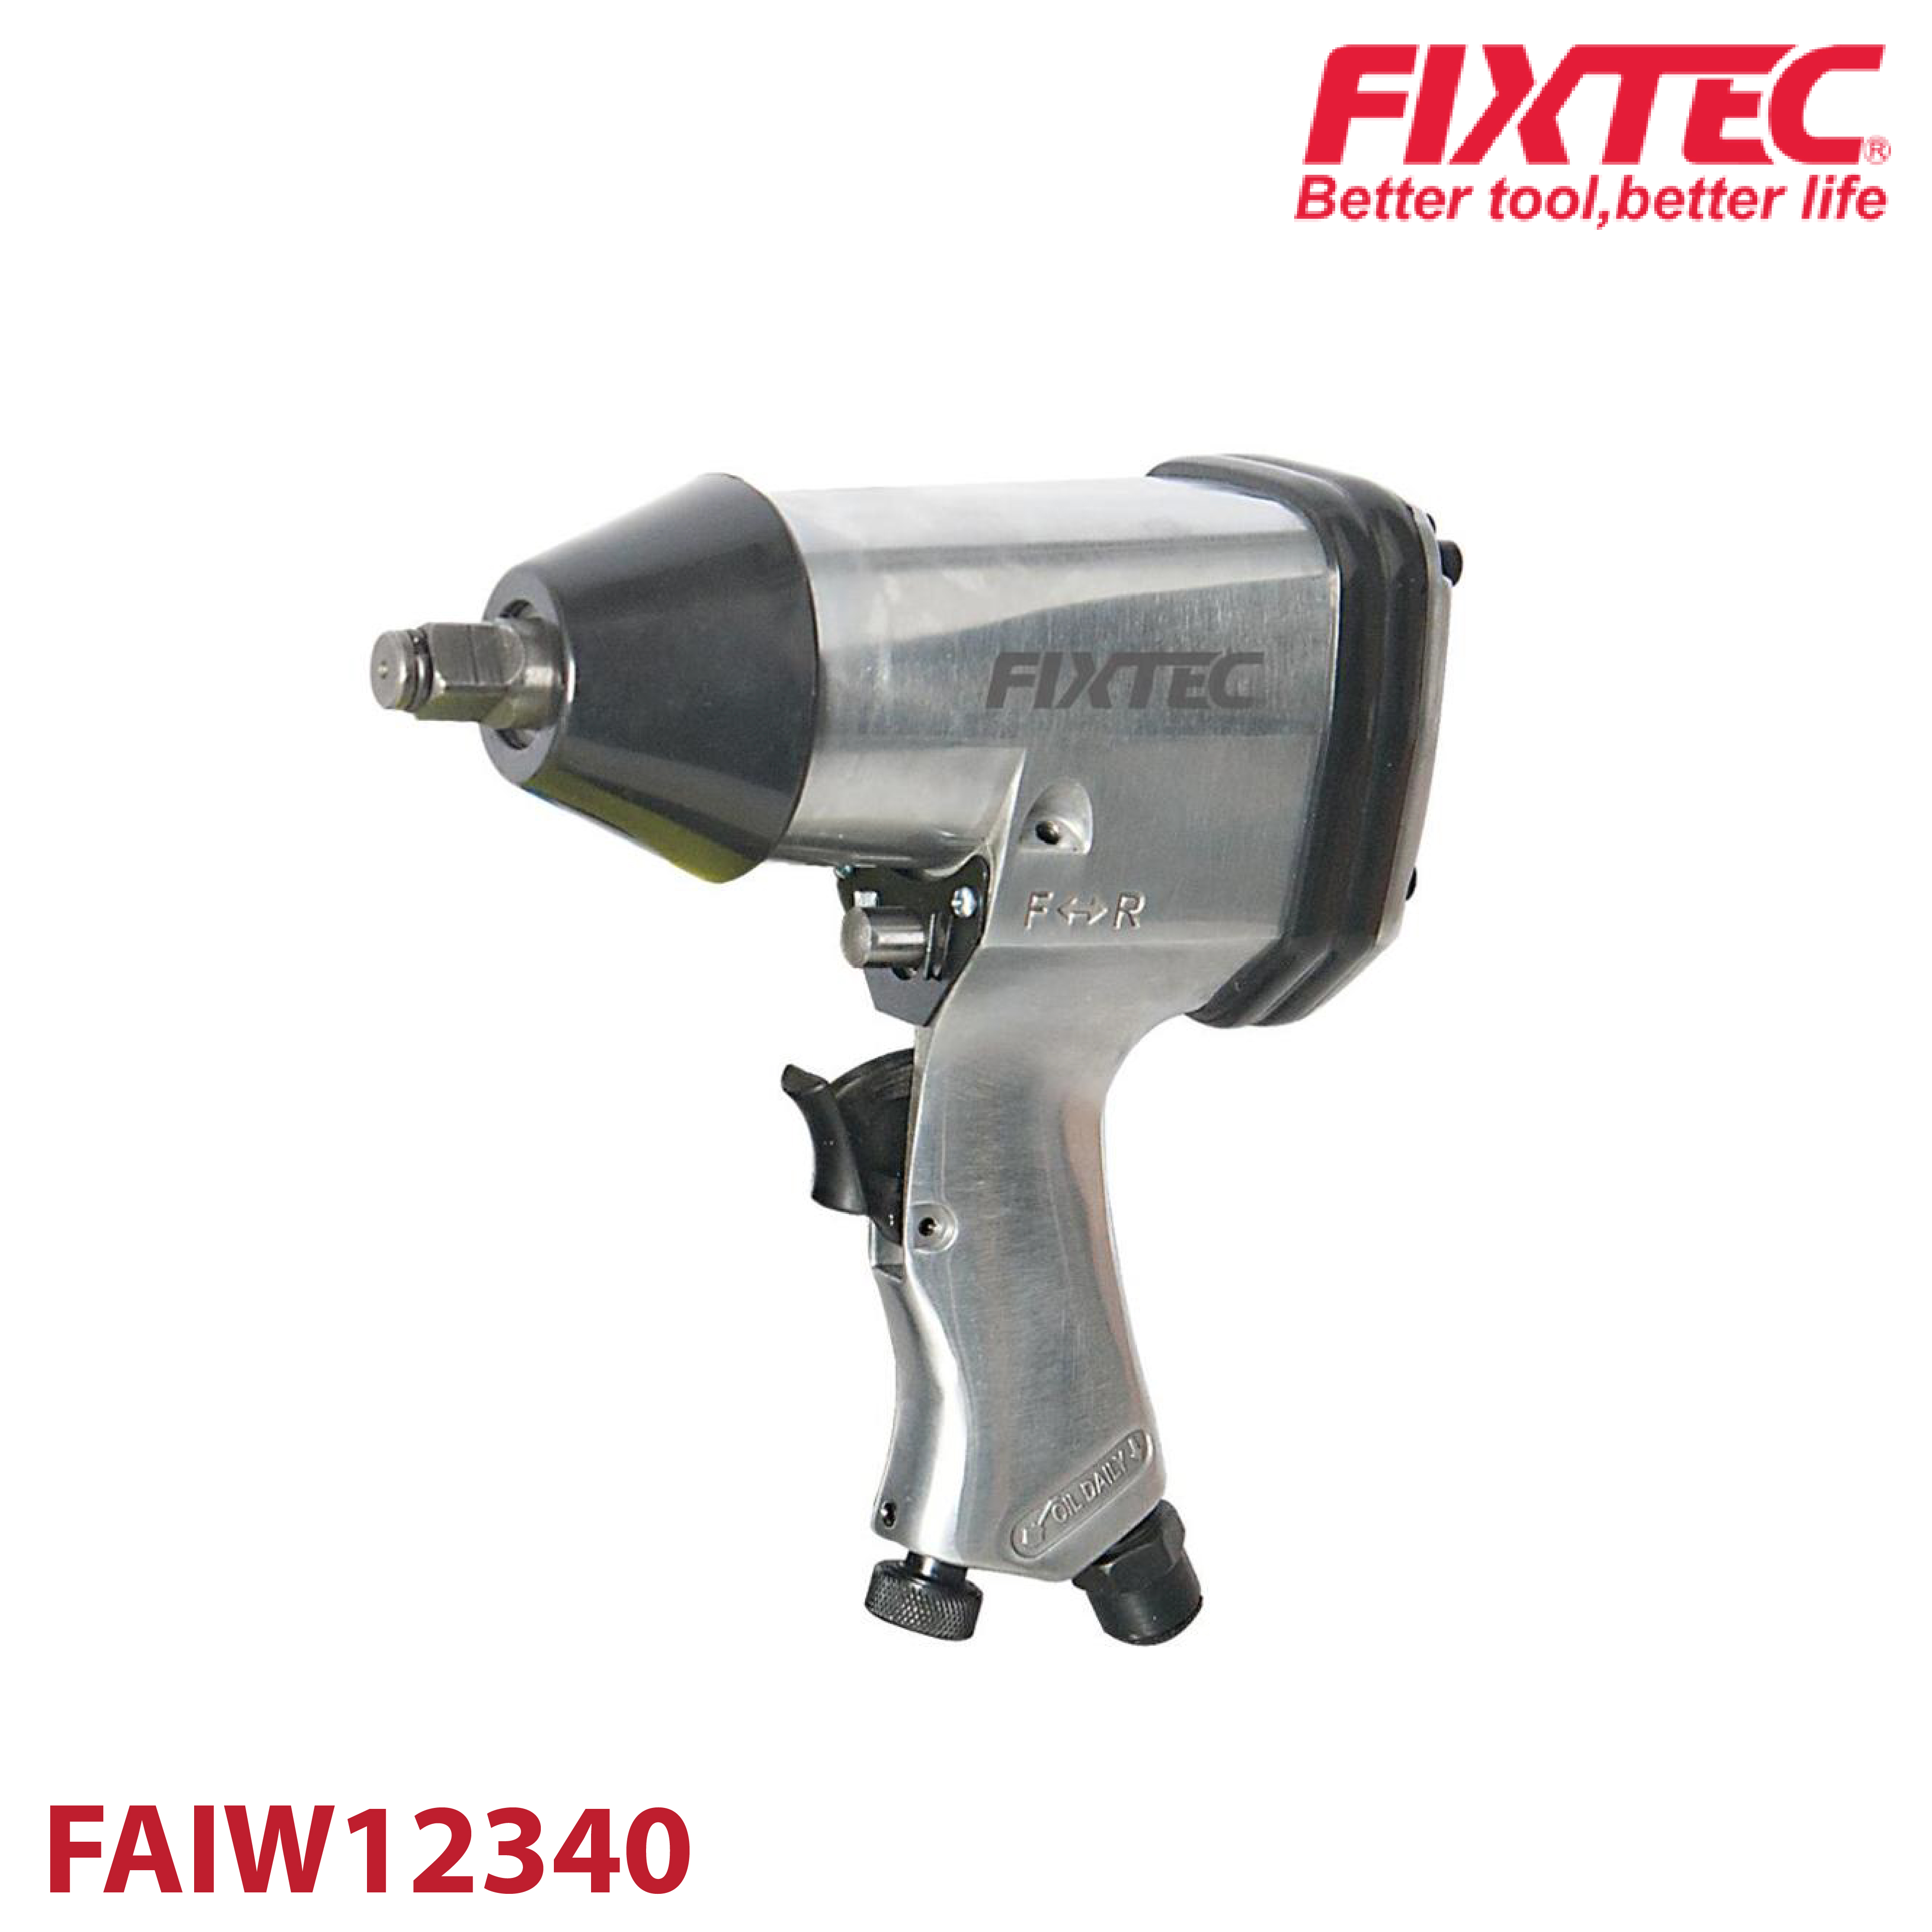 บล็อคลม 1/2 FIXTEC FAIW12340